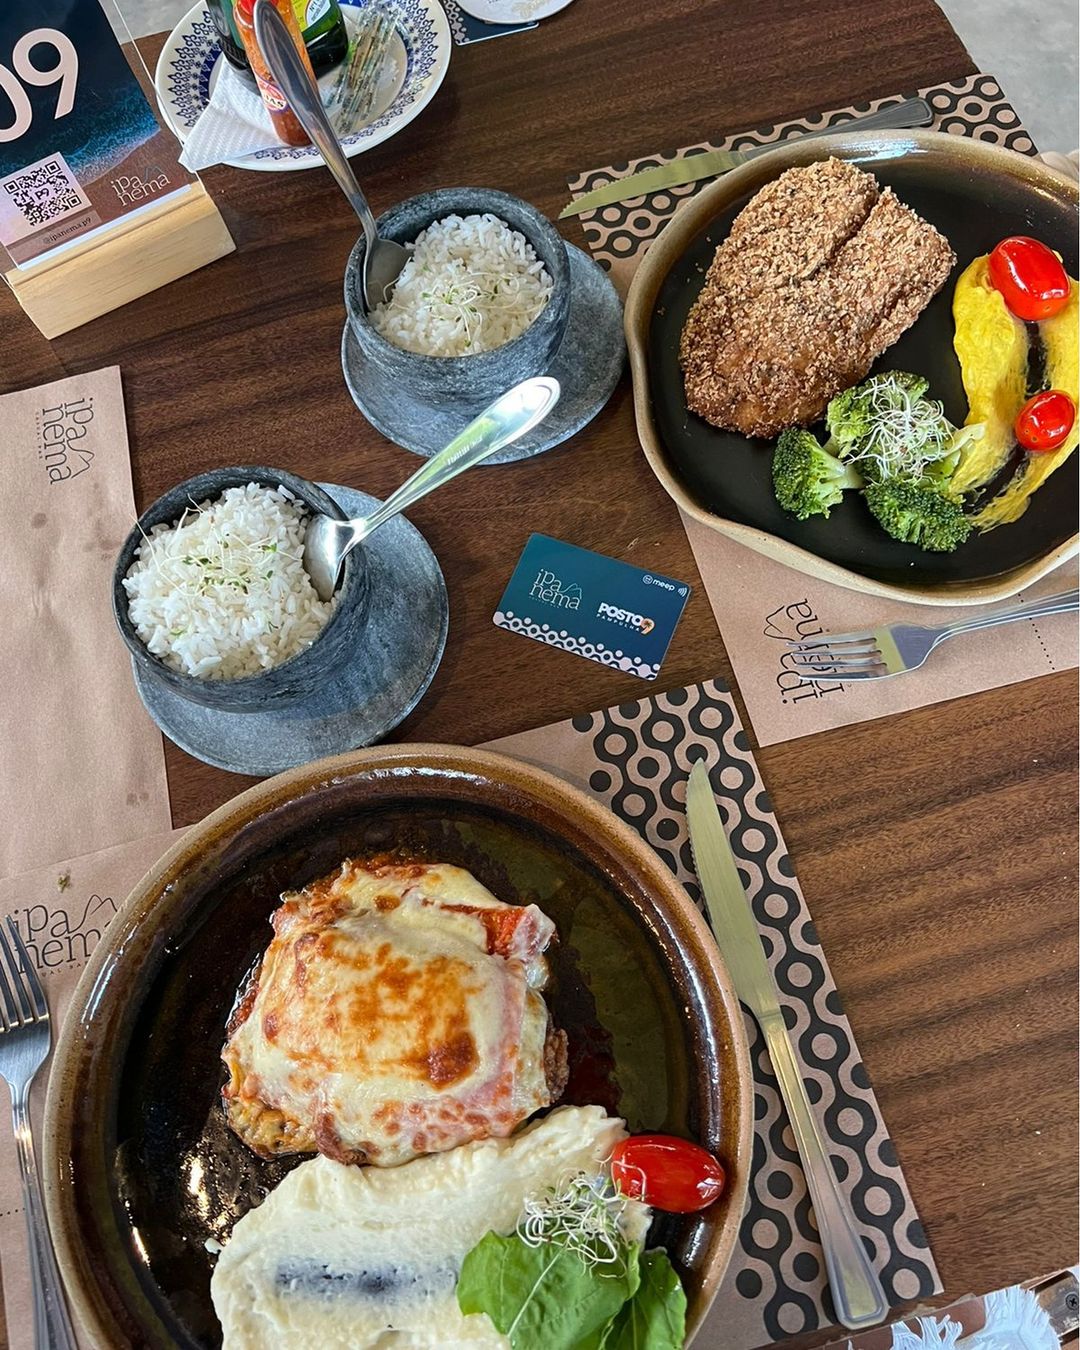 mesa posta em restaurante de BH com dois pratos servidos com carne e purê, acompanhados de duas porções pequena de arroz.